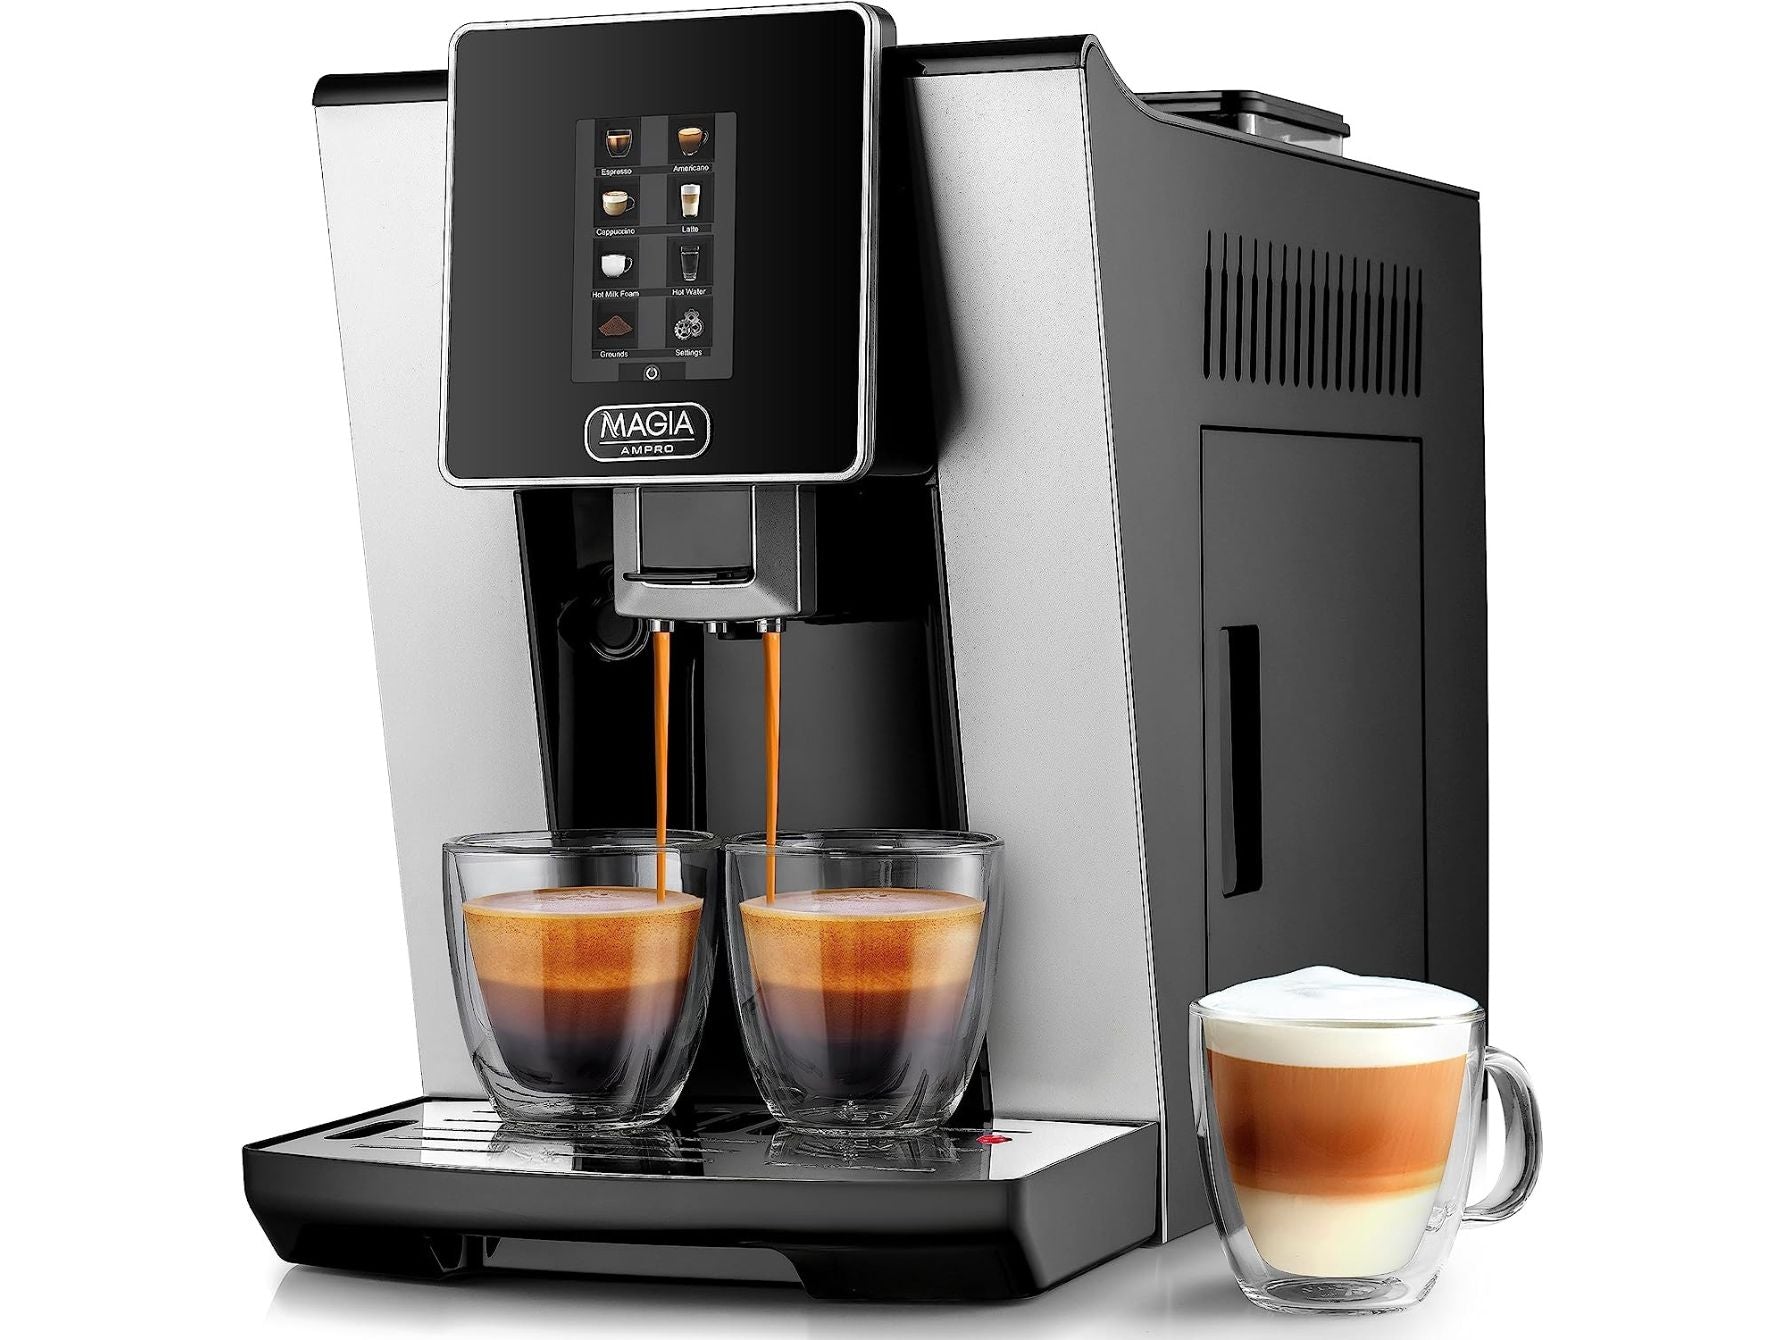  Zulay Magia - Máquina de café espresso súper automática -  Máquina de café espresso automática duradera con molinillo - Cafetera  espresso con pantalla táctil de 7 pulgadas fácil de usar, 19